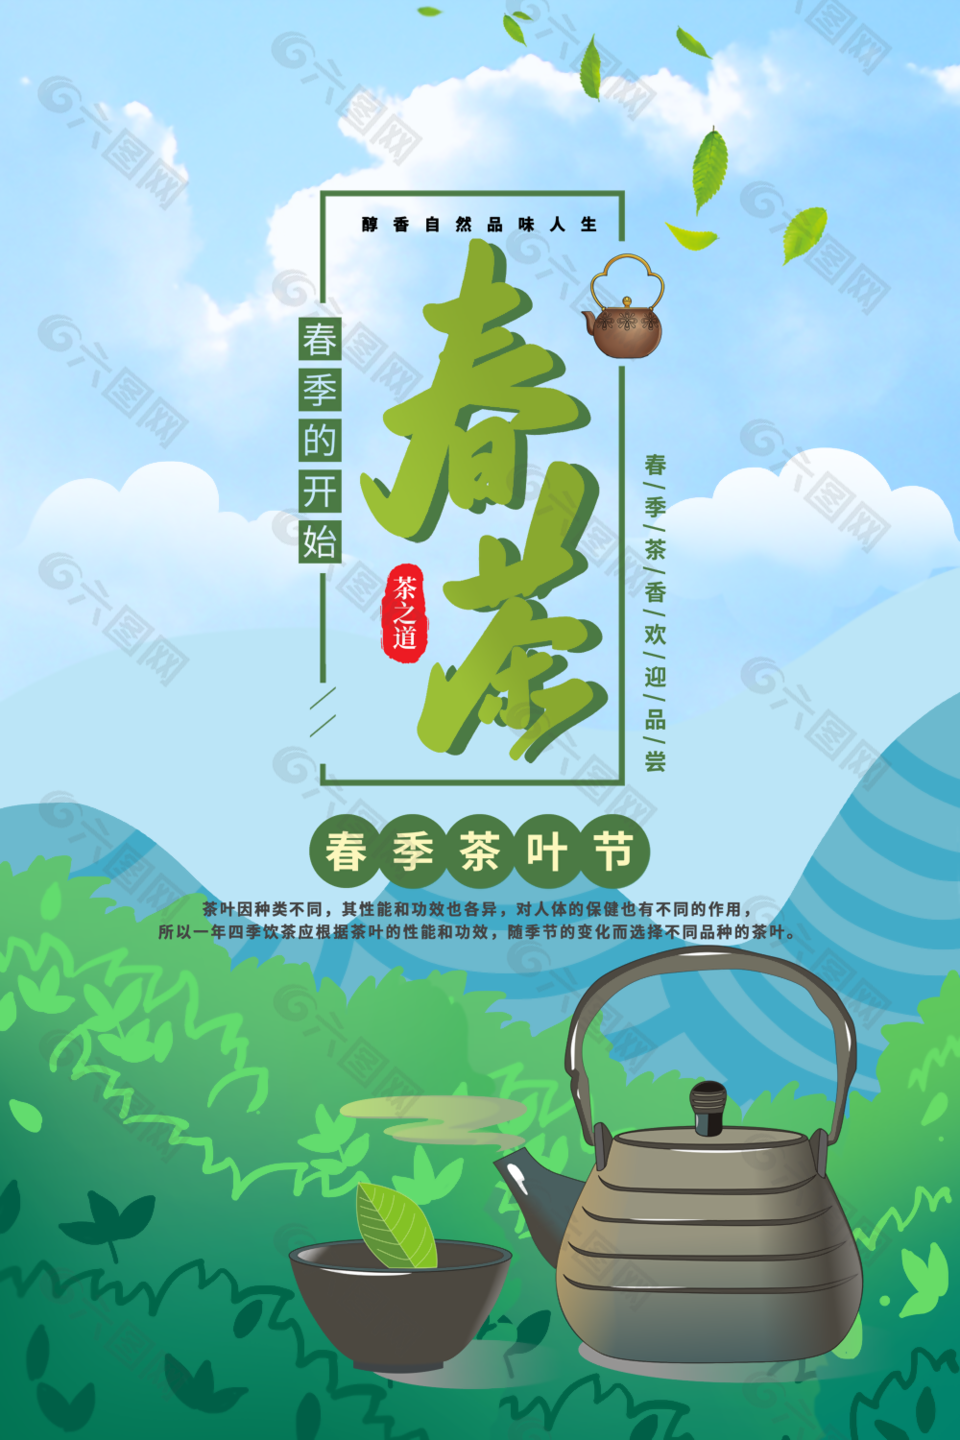 春茶促銷宣傳海報設計素材